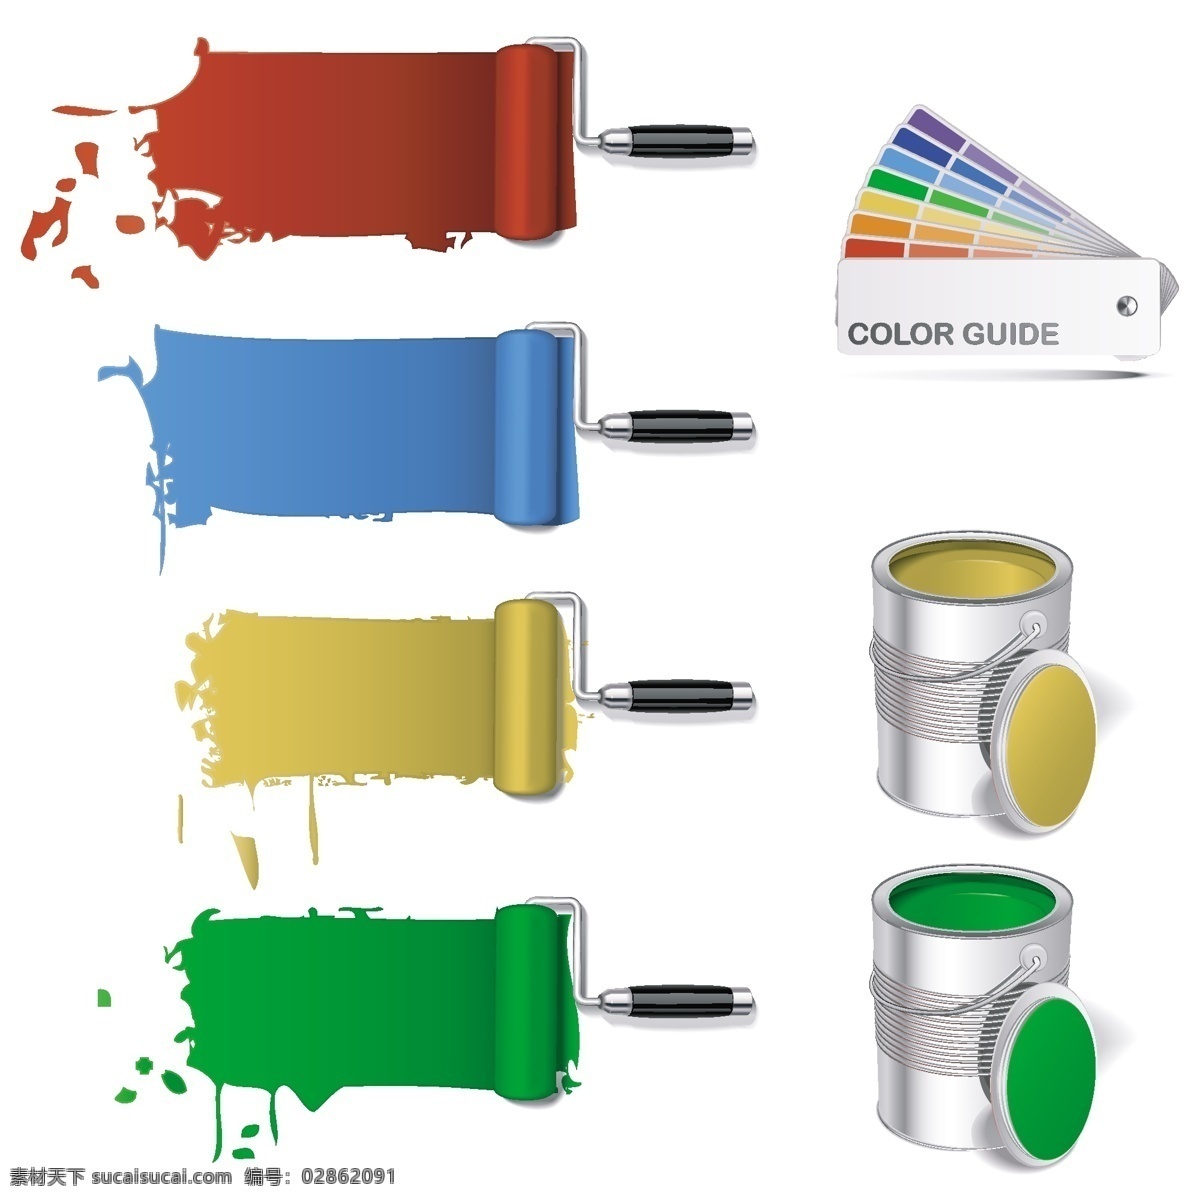 彩色漆图标 彩色 漆 工地 施工 工具 工具设计 工具素材 彩色工具 施工工具 工程图 安全帽 警示图标 工程图标 生活百科 矢量素材 白色